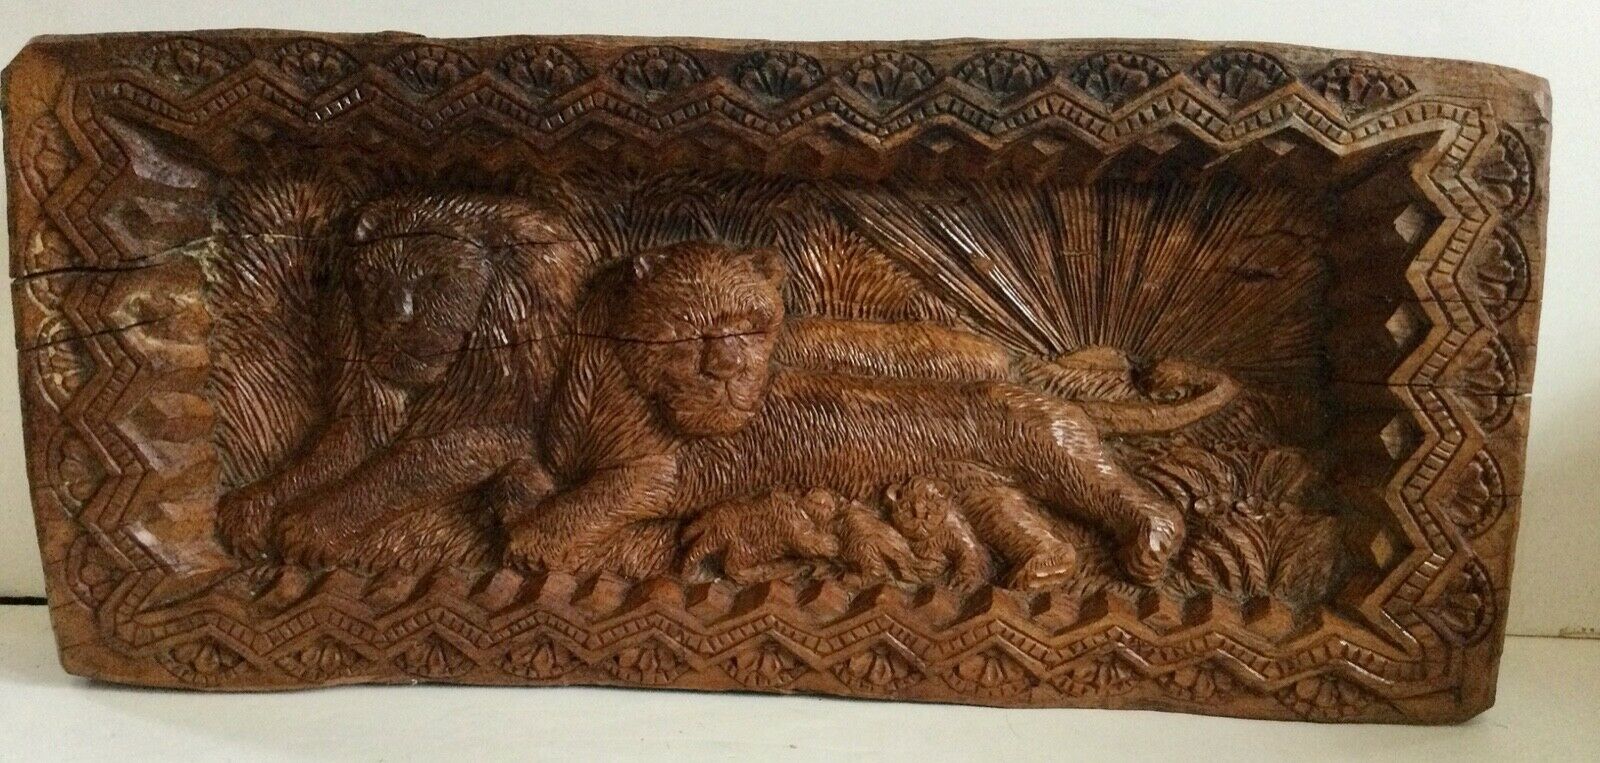 Carved Lion And Lioness & Cubs Huge Wood Carved Solid Log Old Estate Collection